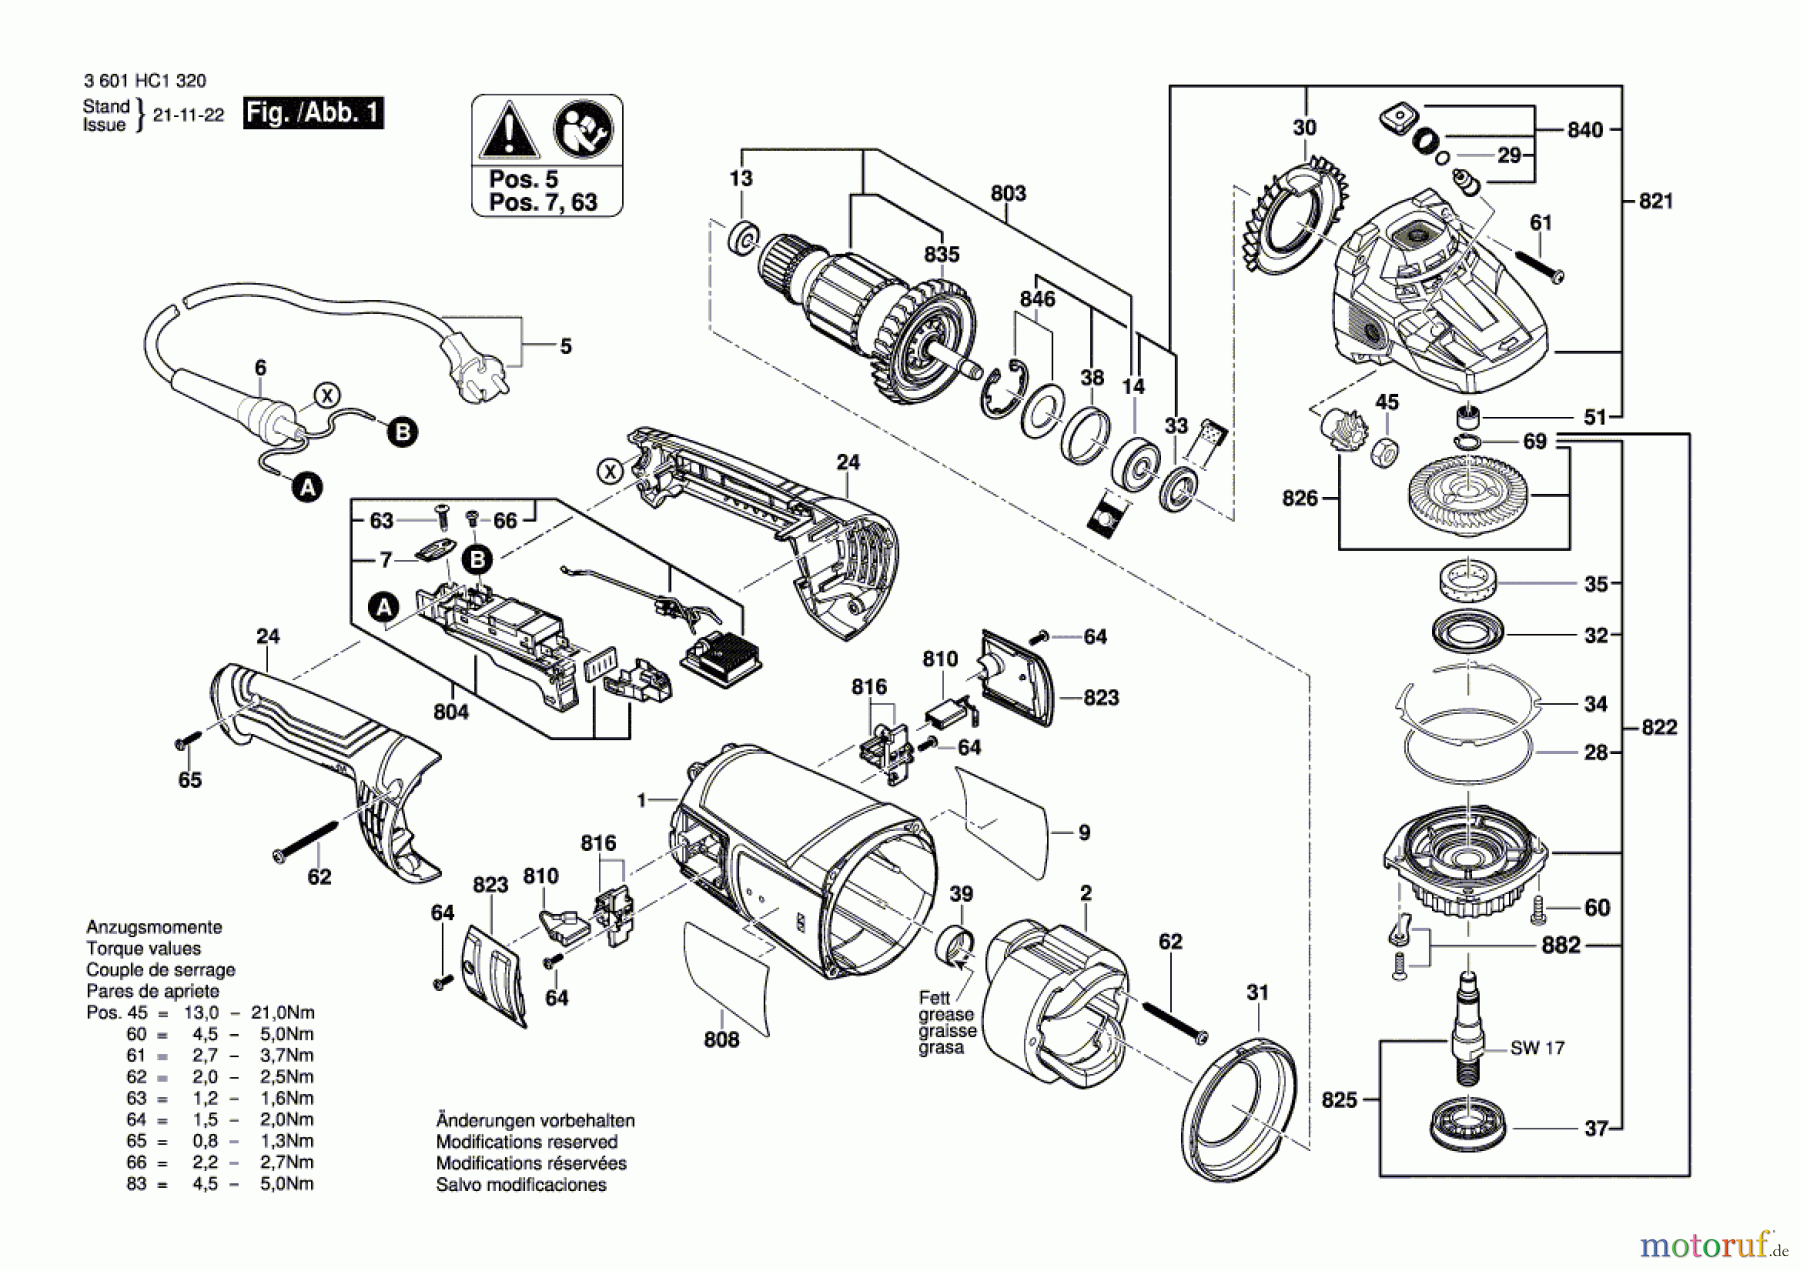  Bosch Werkzeug Winkelschleifer GWS 22-230 J Seite 1